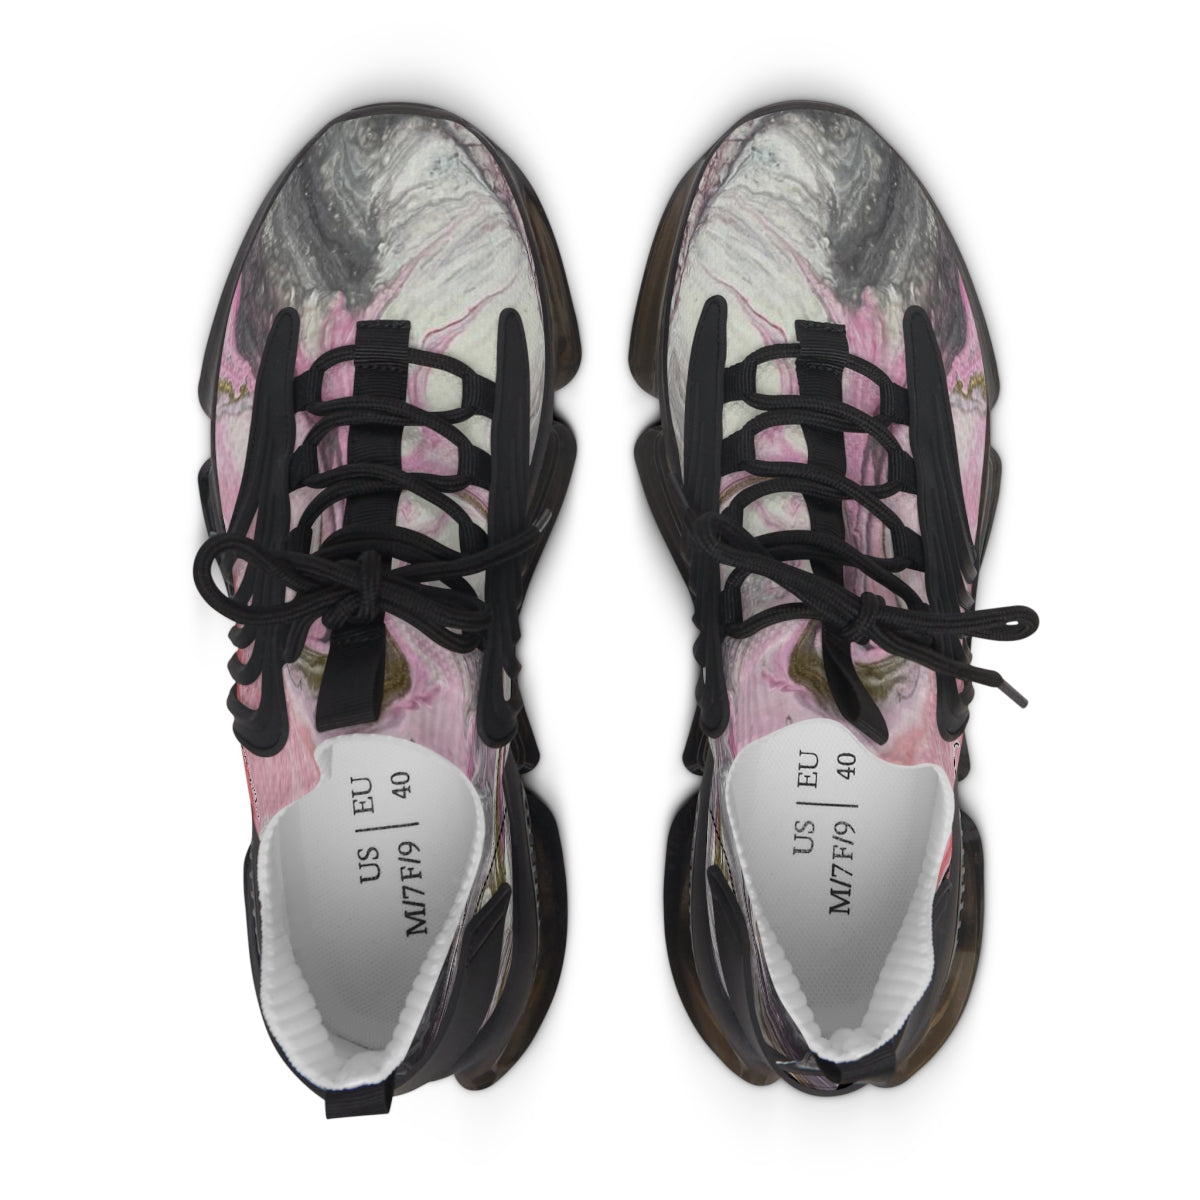 Women's Mesh Sneakers - Dusky pink design